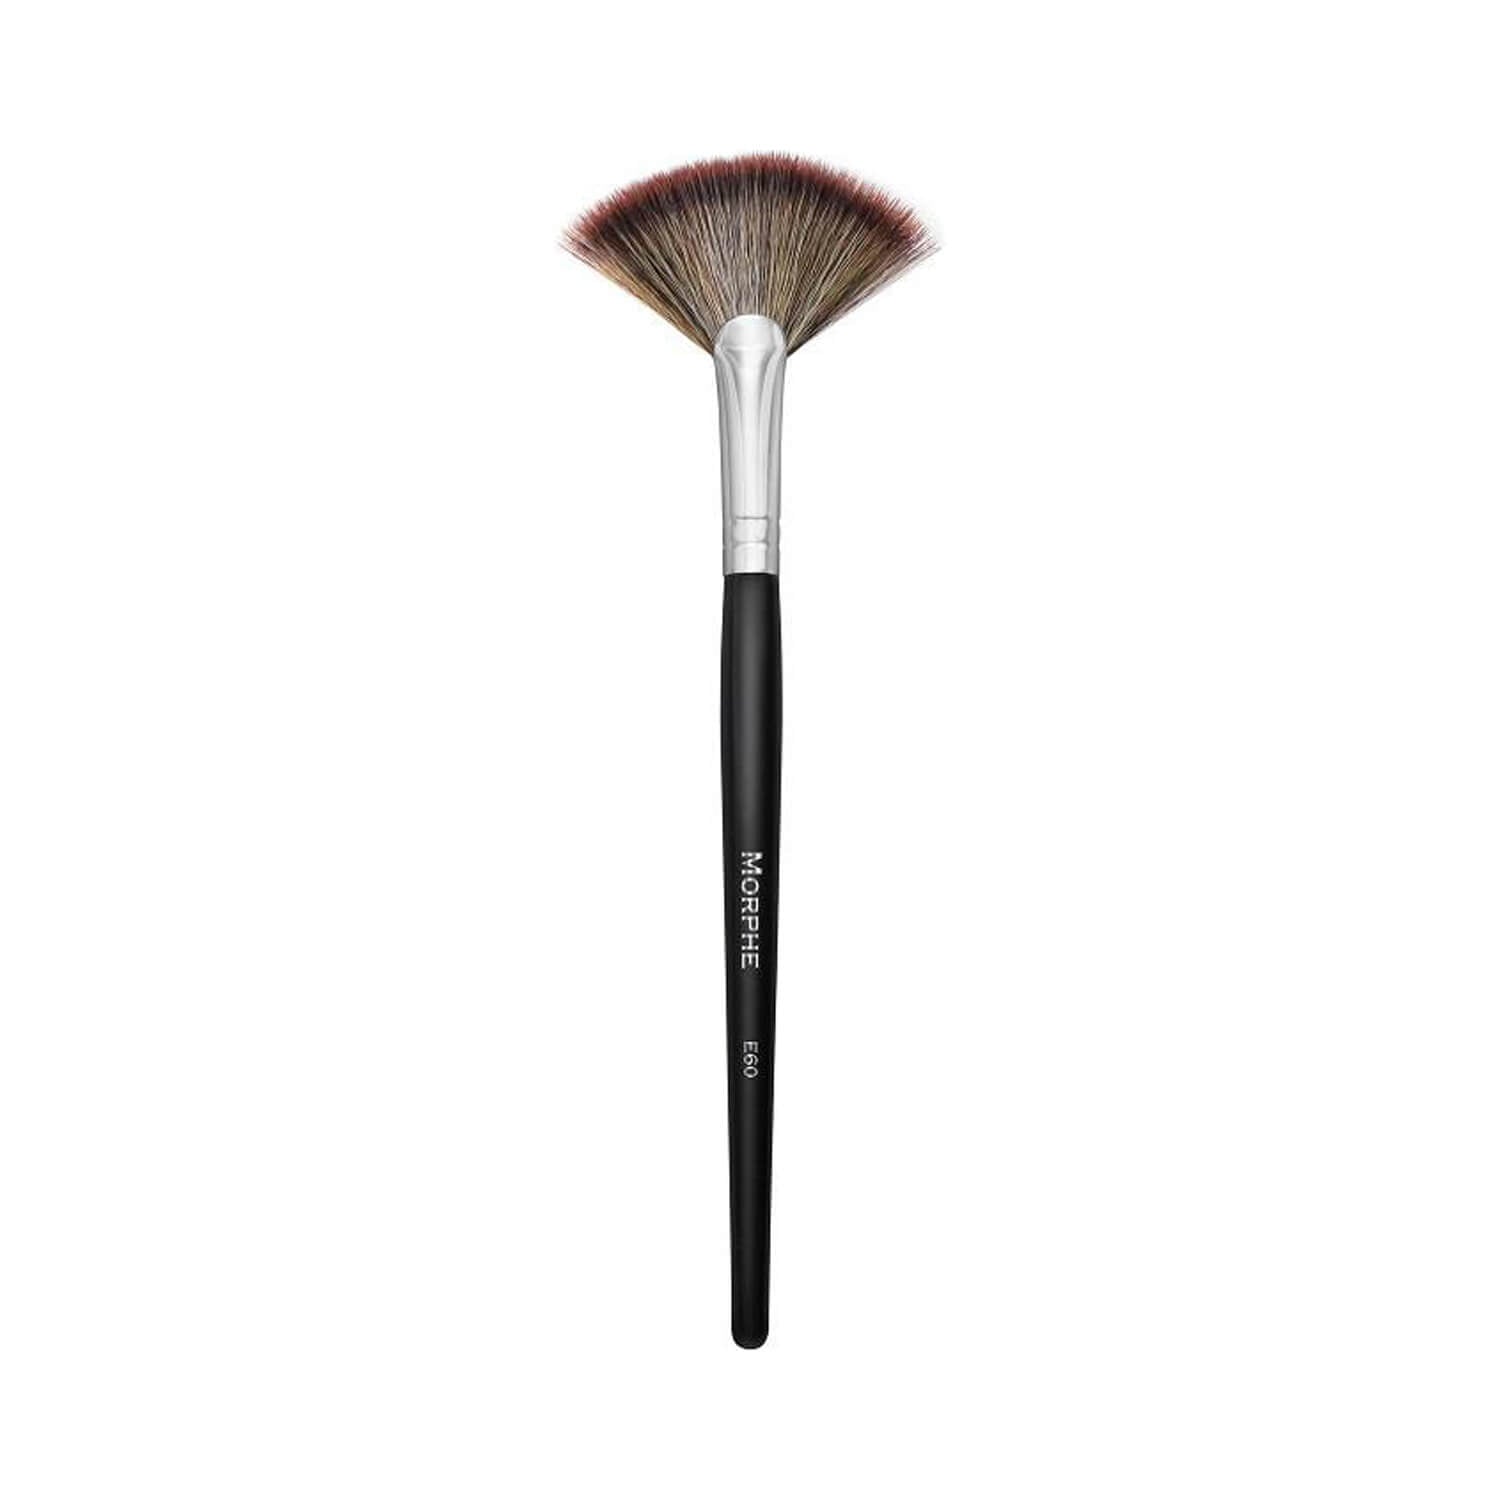 Morphe Cosmetics E60 Deluxe Highlight Brush